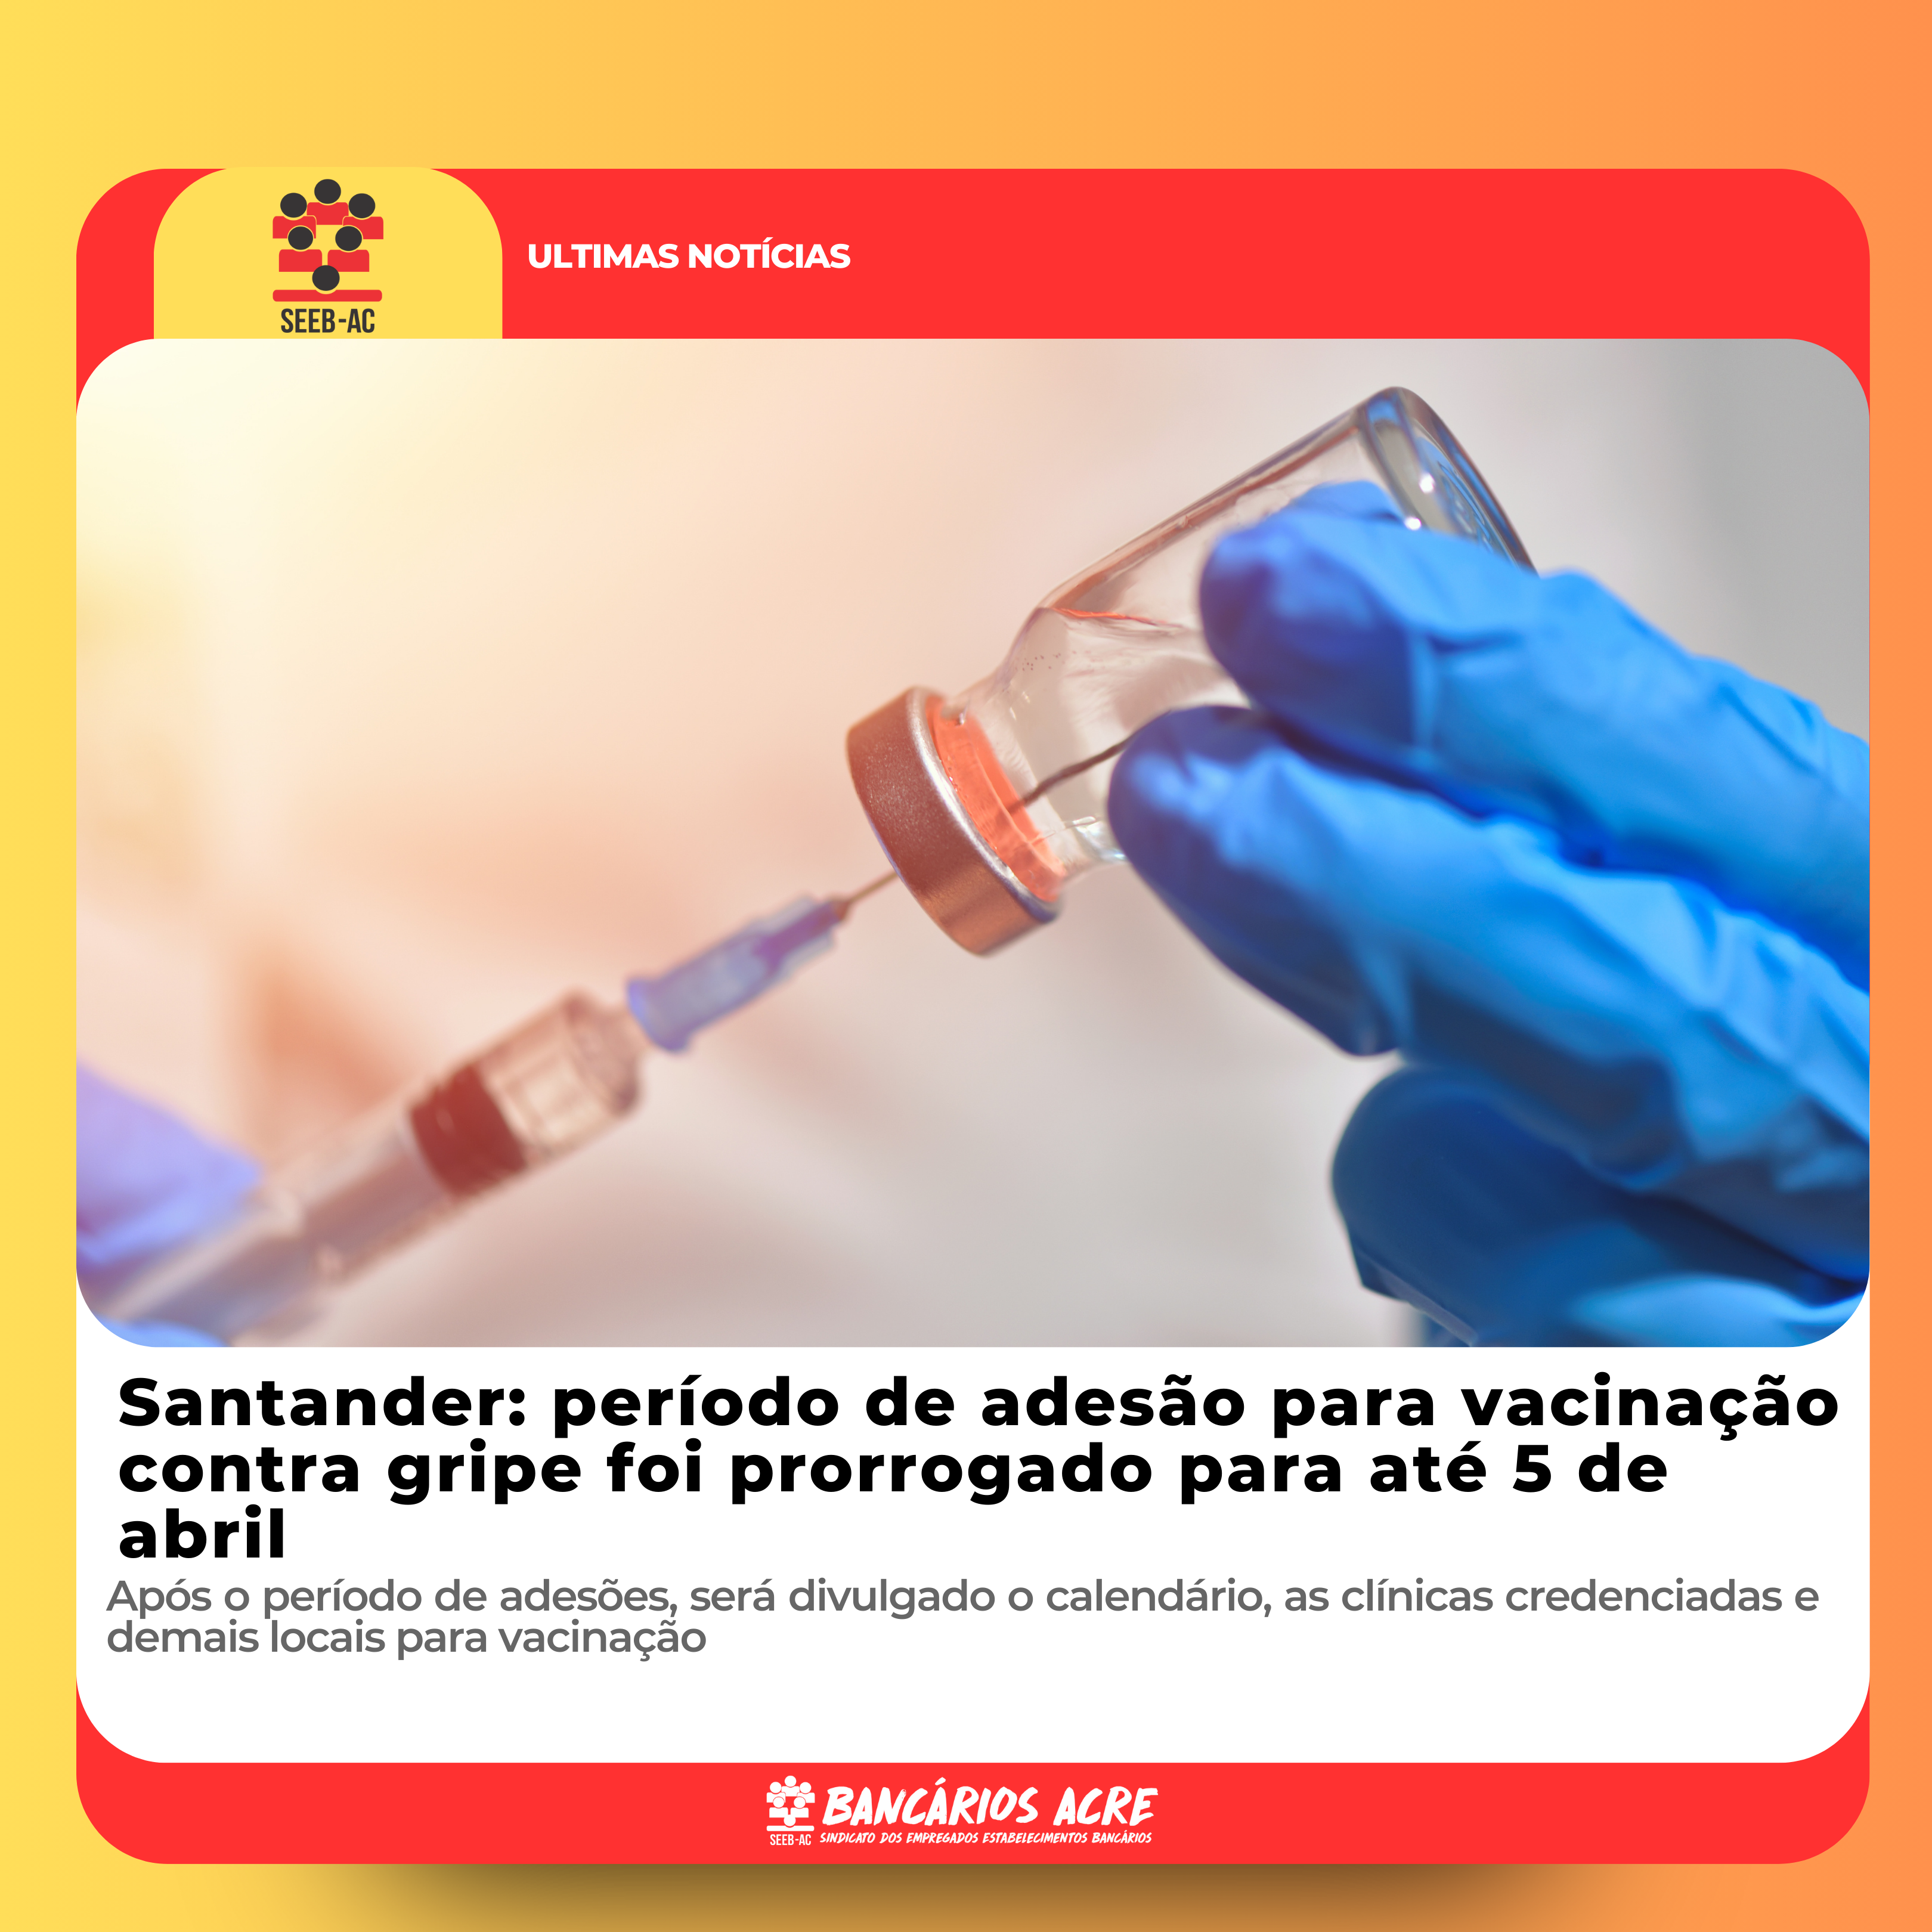 Você está visualizando atualmente Santander: período de adesão para vacinação contra gripe foi prorrogado para até 5 de abril